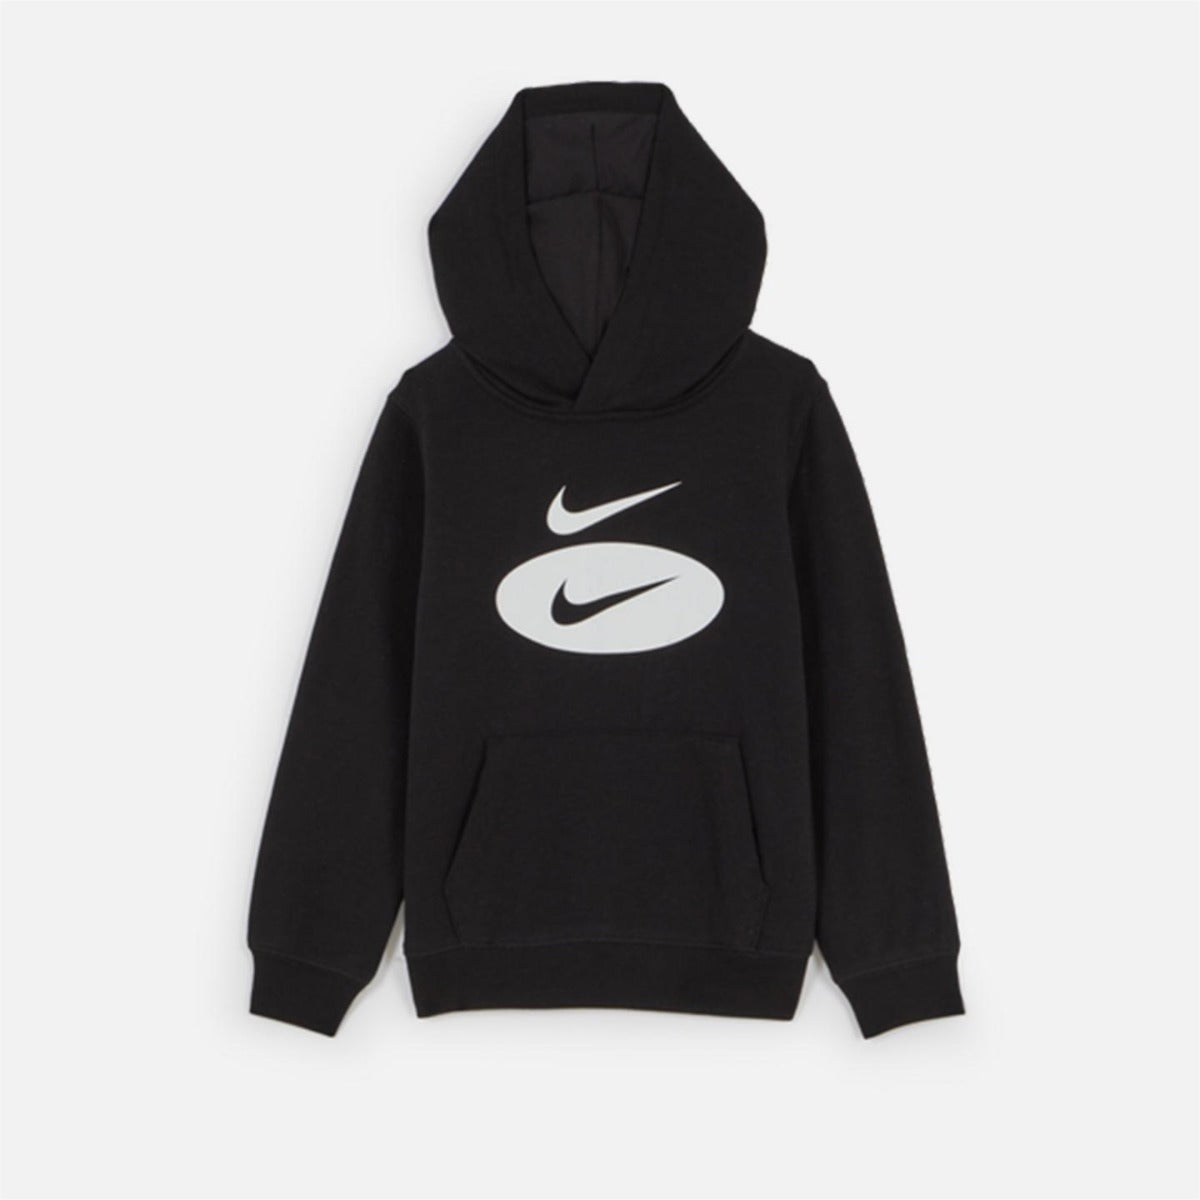 Nike Sportswear Kids Sweatshirt - Black/White